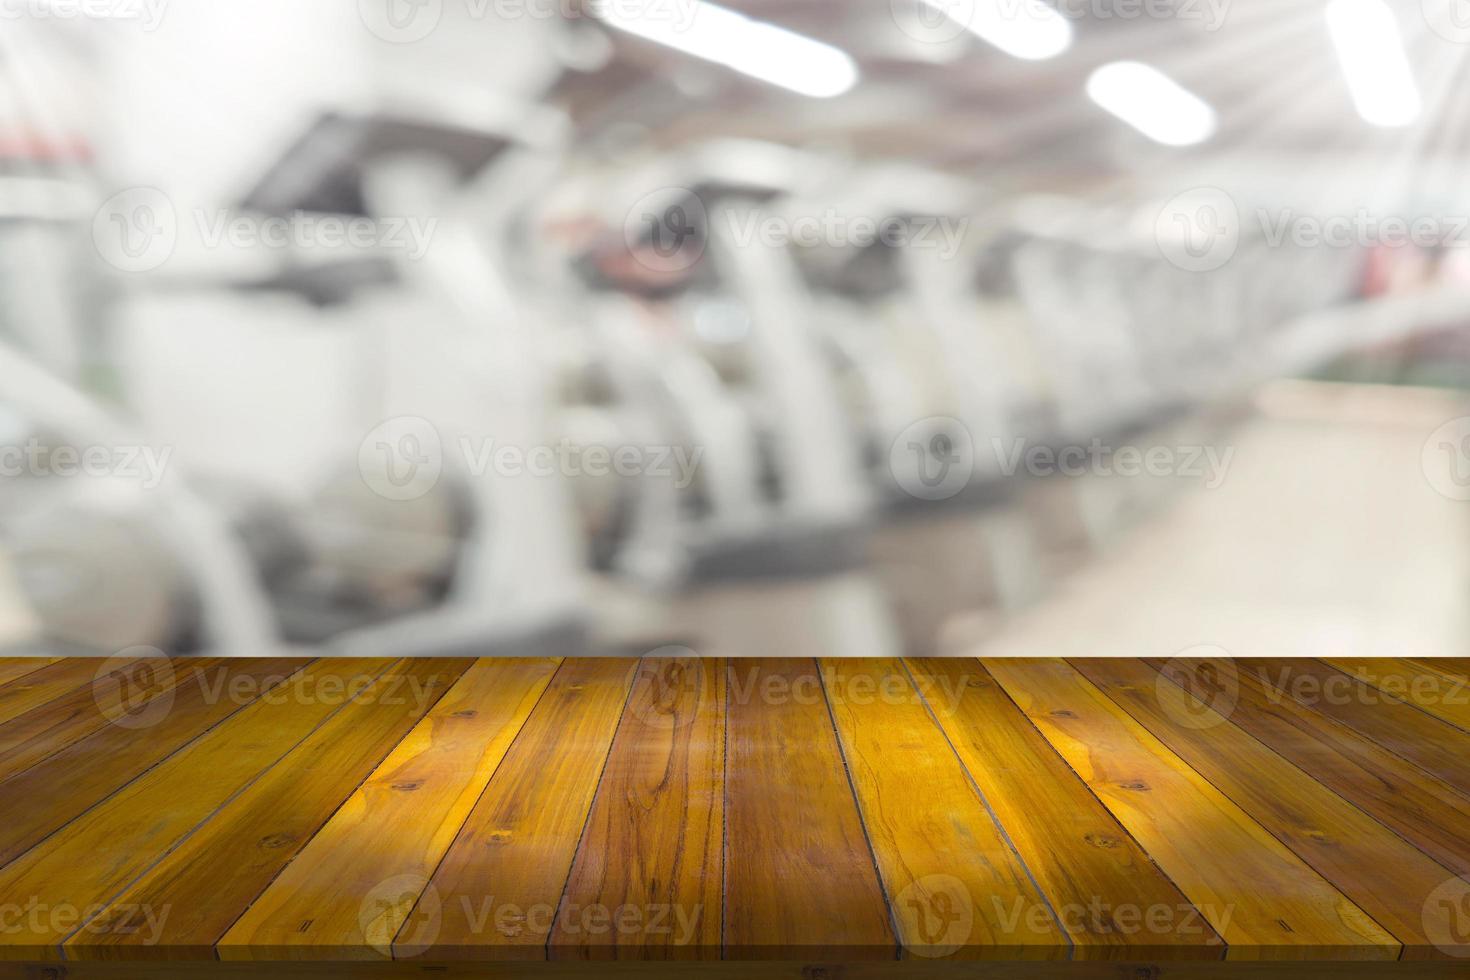 tömma trä- styrelse Plats plattform med fläck kondition Gym Utrustning bakgrund foto